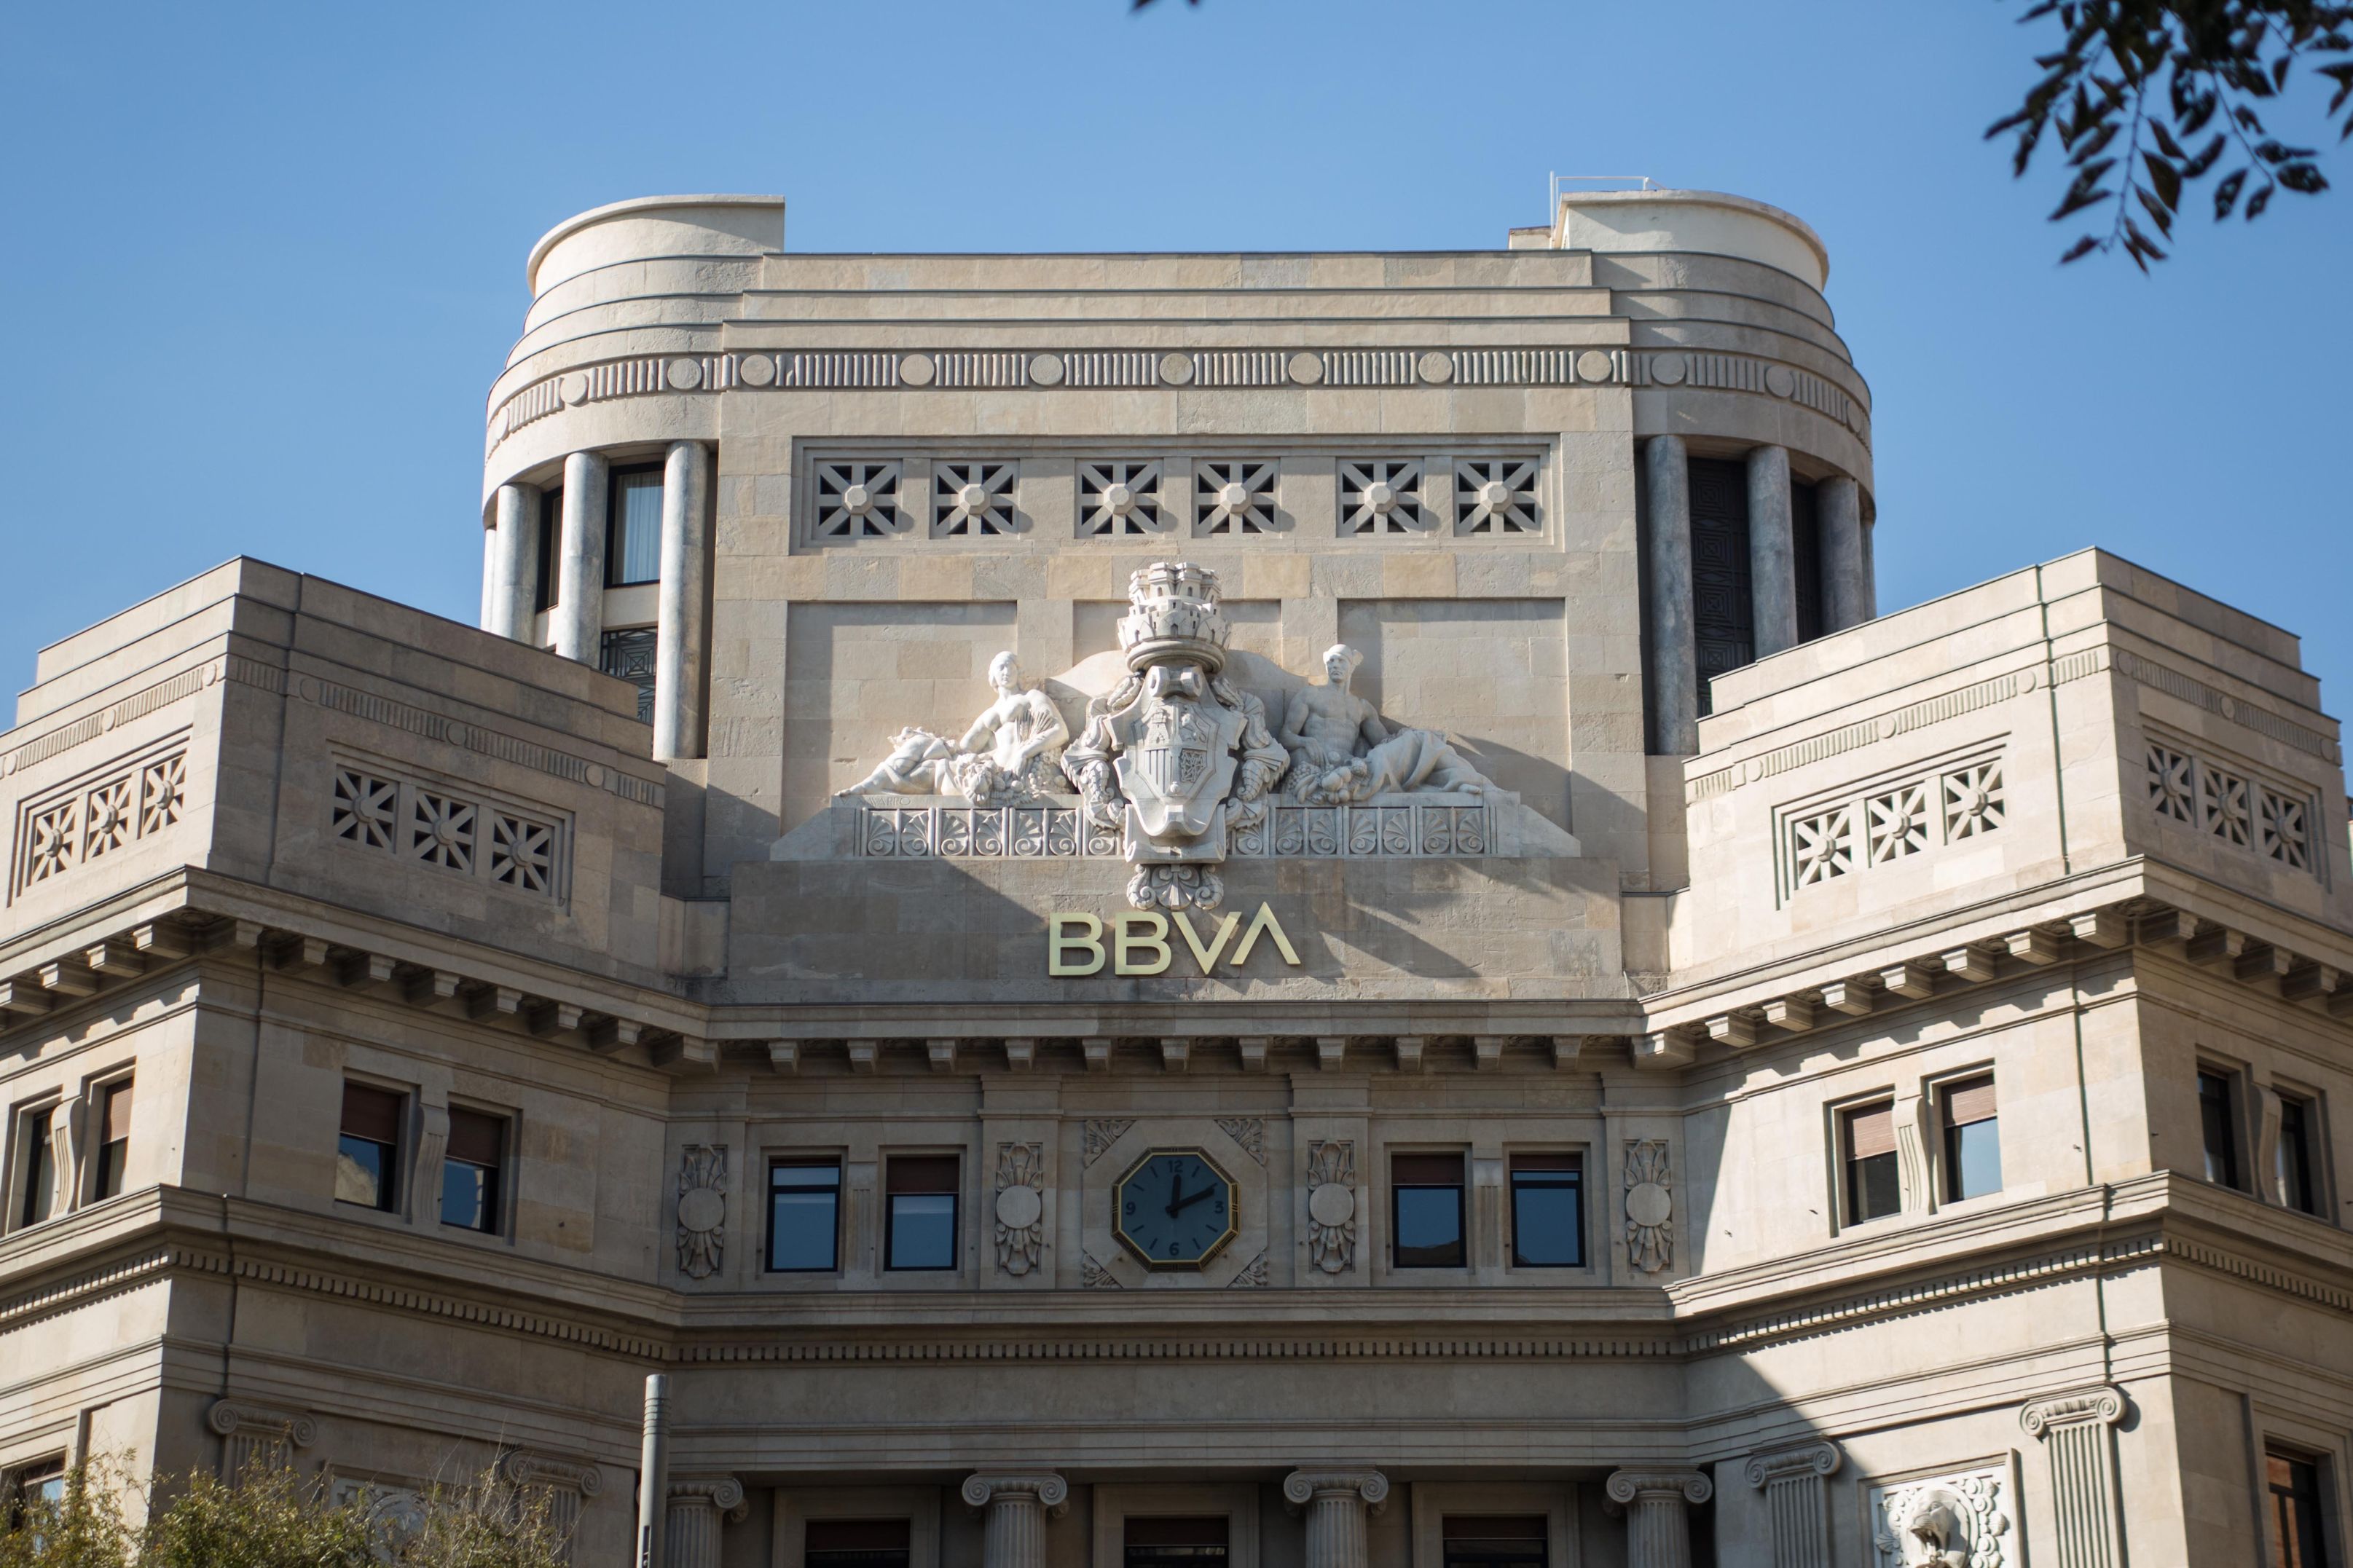 Grupul bancar spaniol BBVA vrea să cumpere rivalul Sabadell pentru a crea un gigant bancar european cu active de peste 1.000 miliarde de euro. În România, BBVA deţine Garanti BBVA Bank